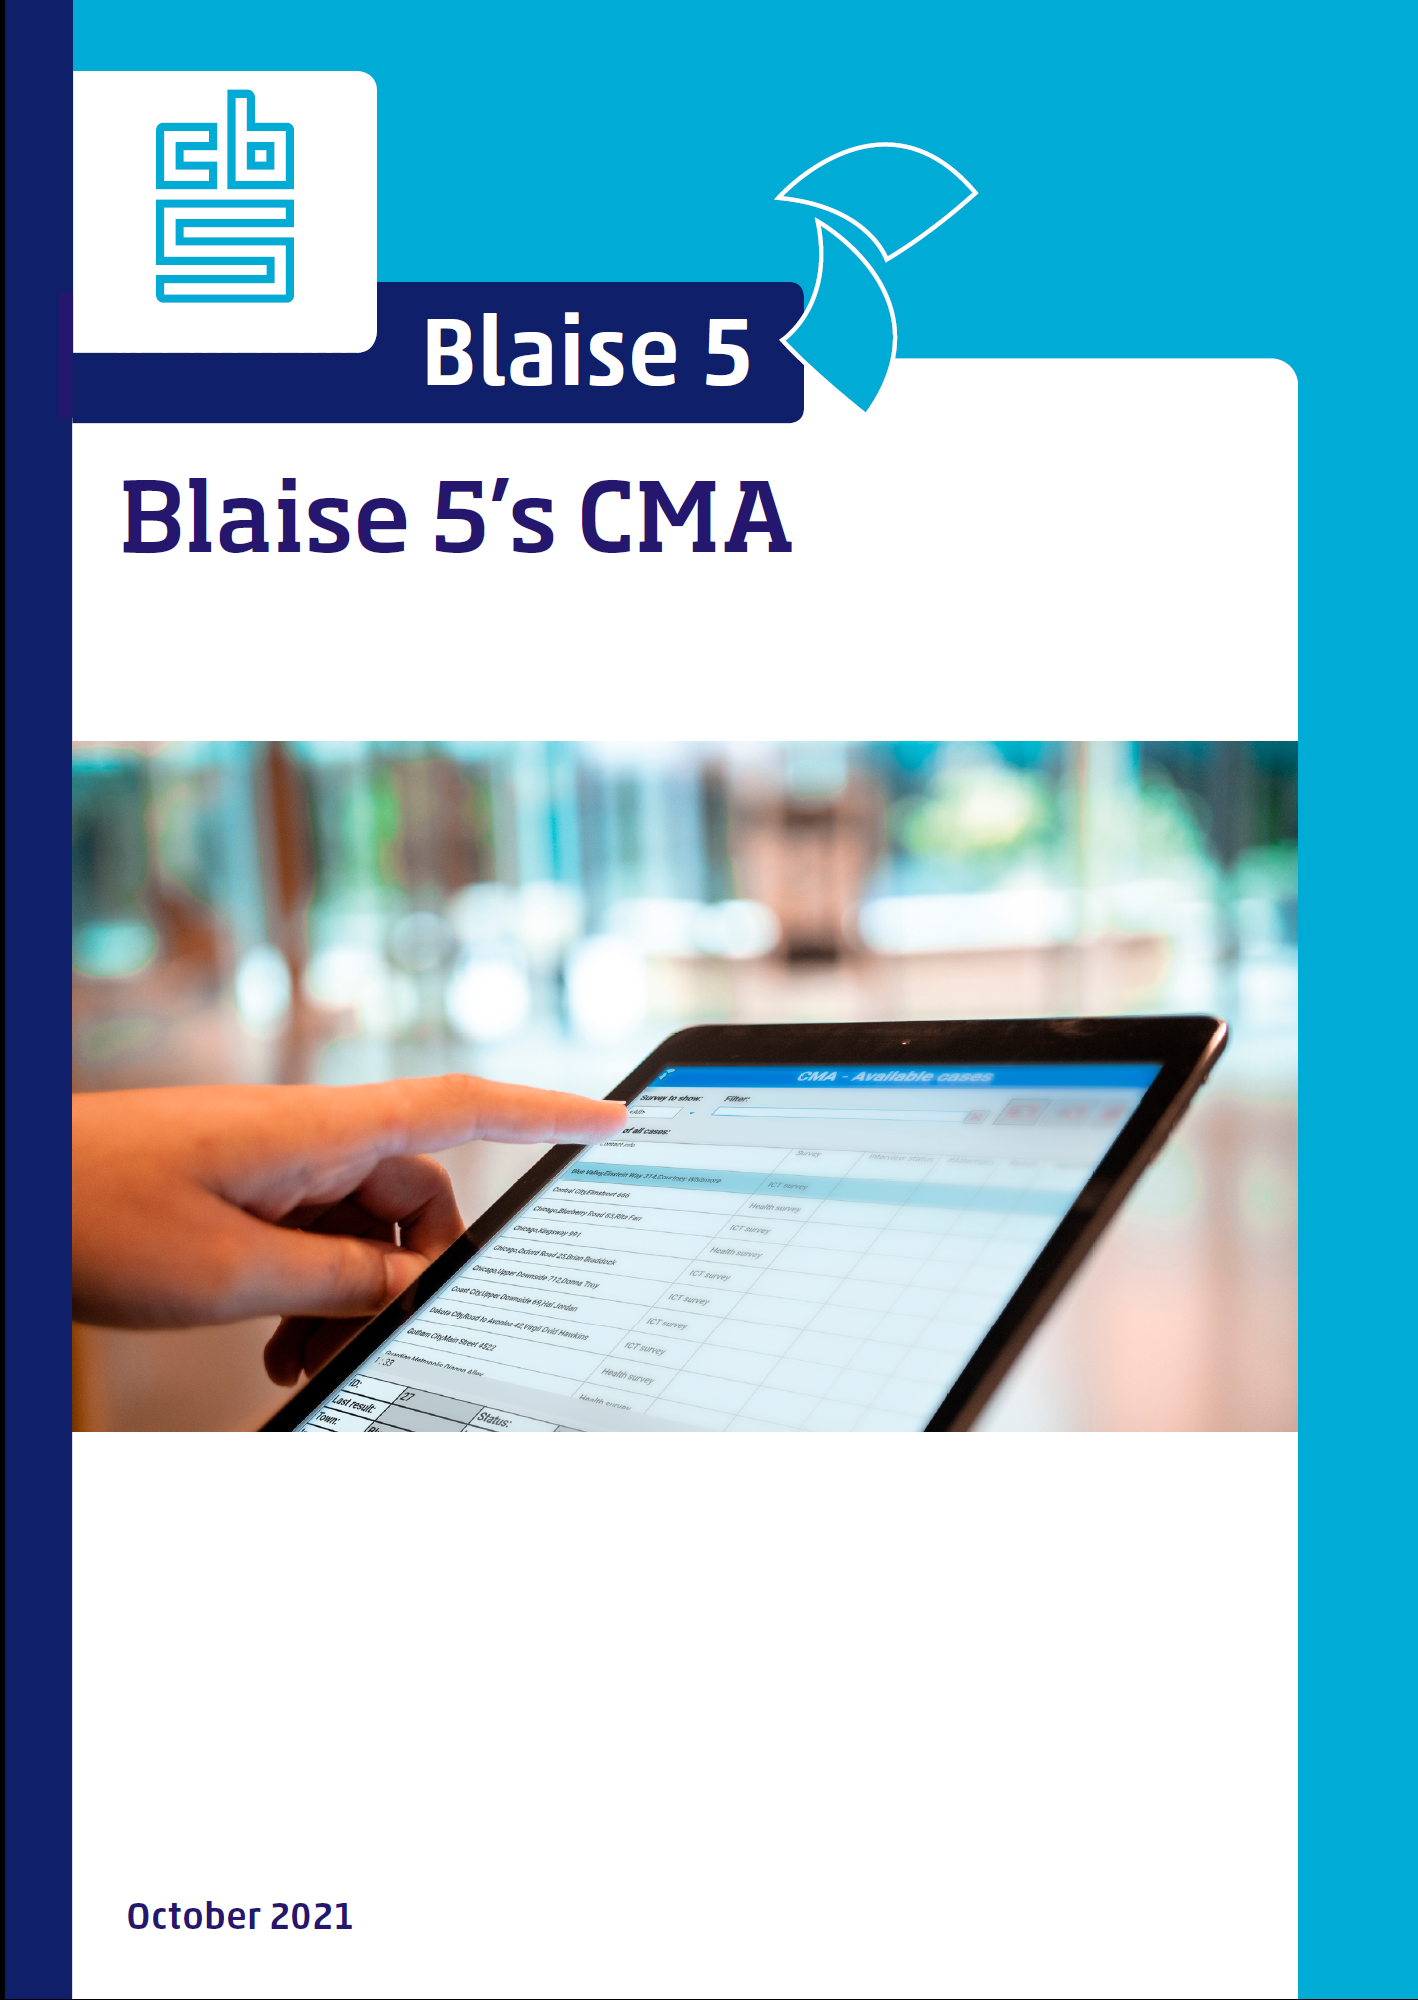 Blaise 5's CMA